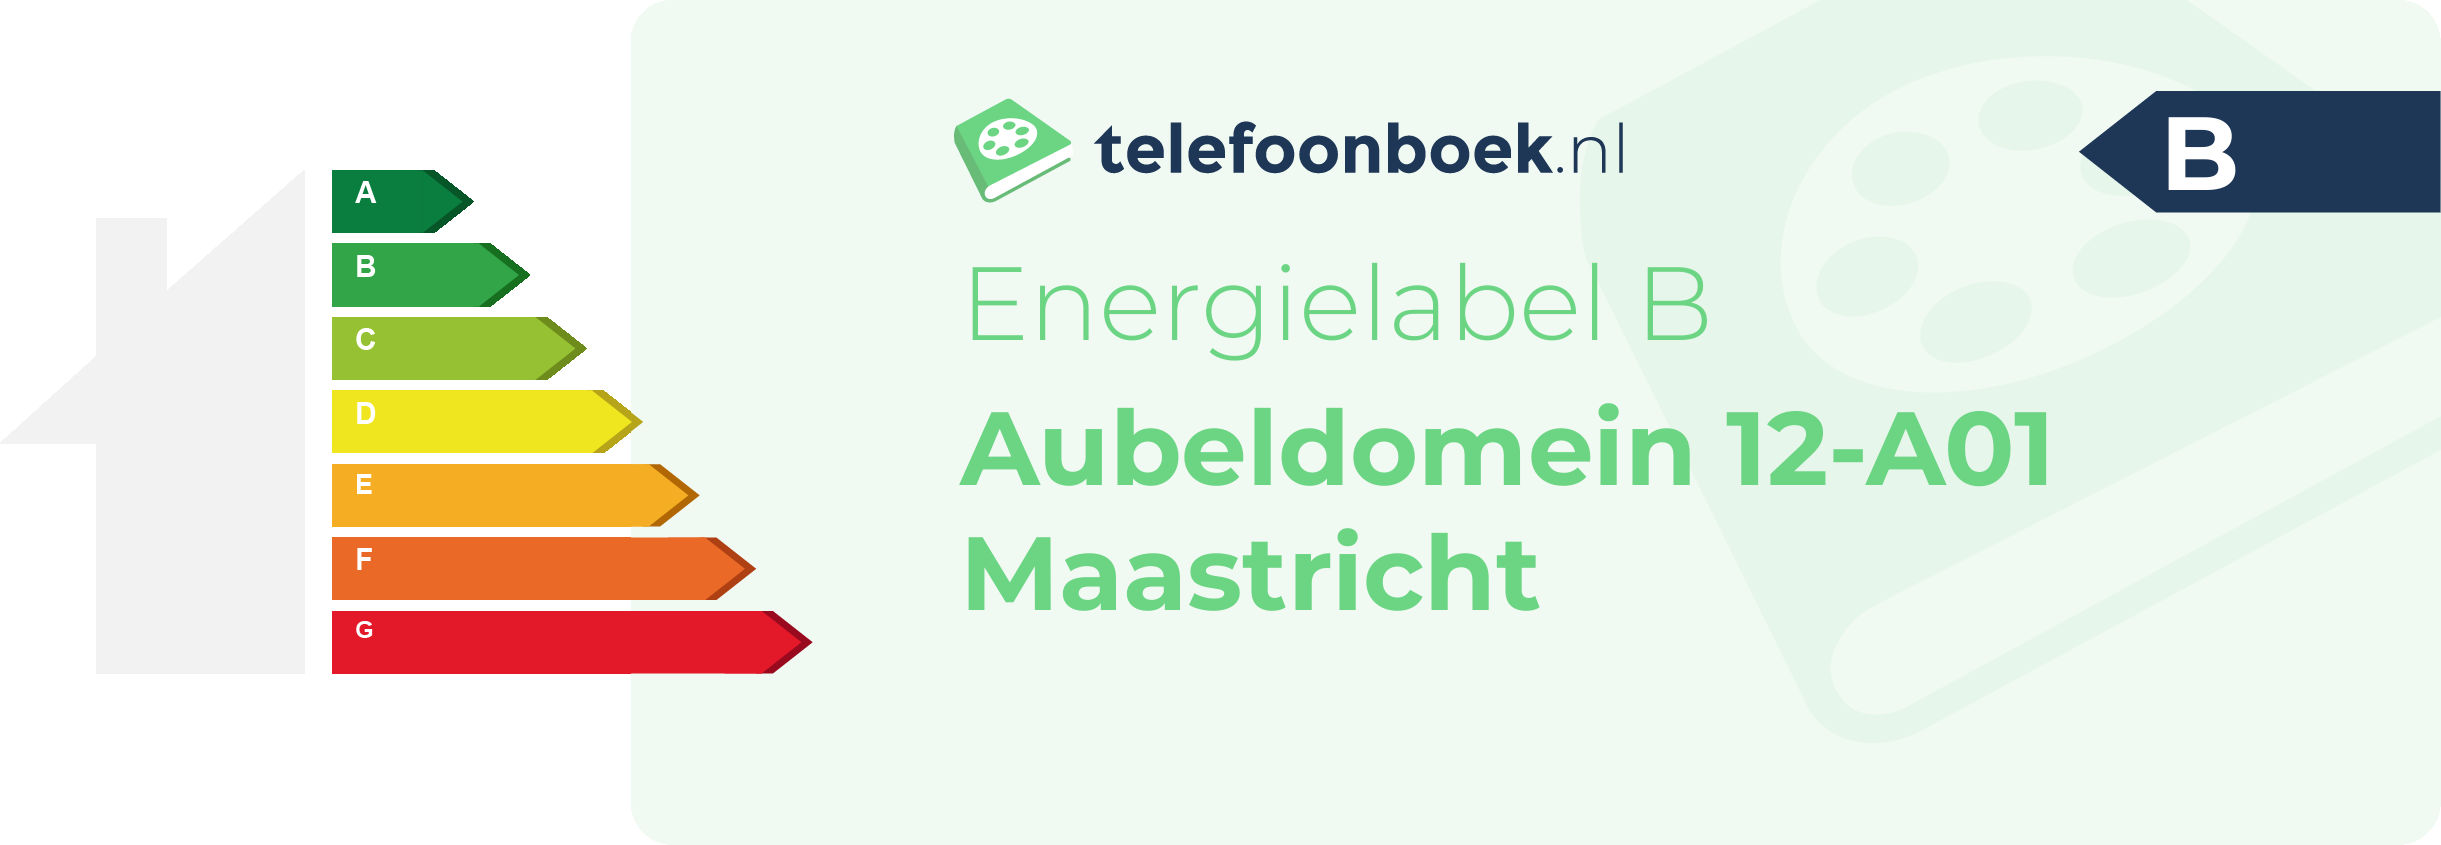 Energielabel Aubeldomein 12-A01 Maastricht